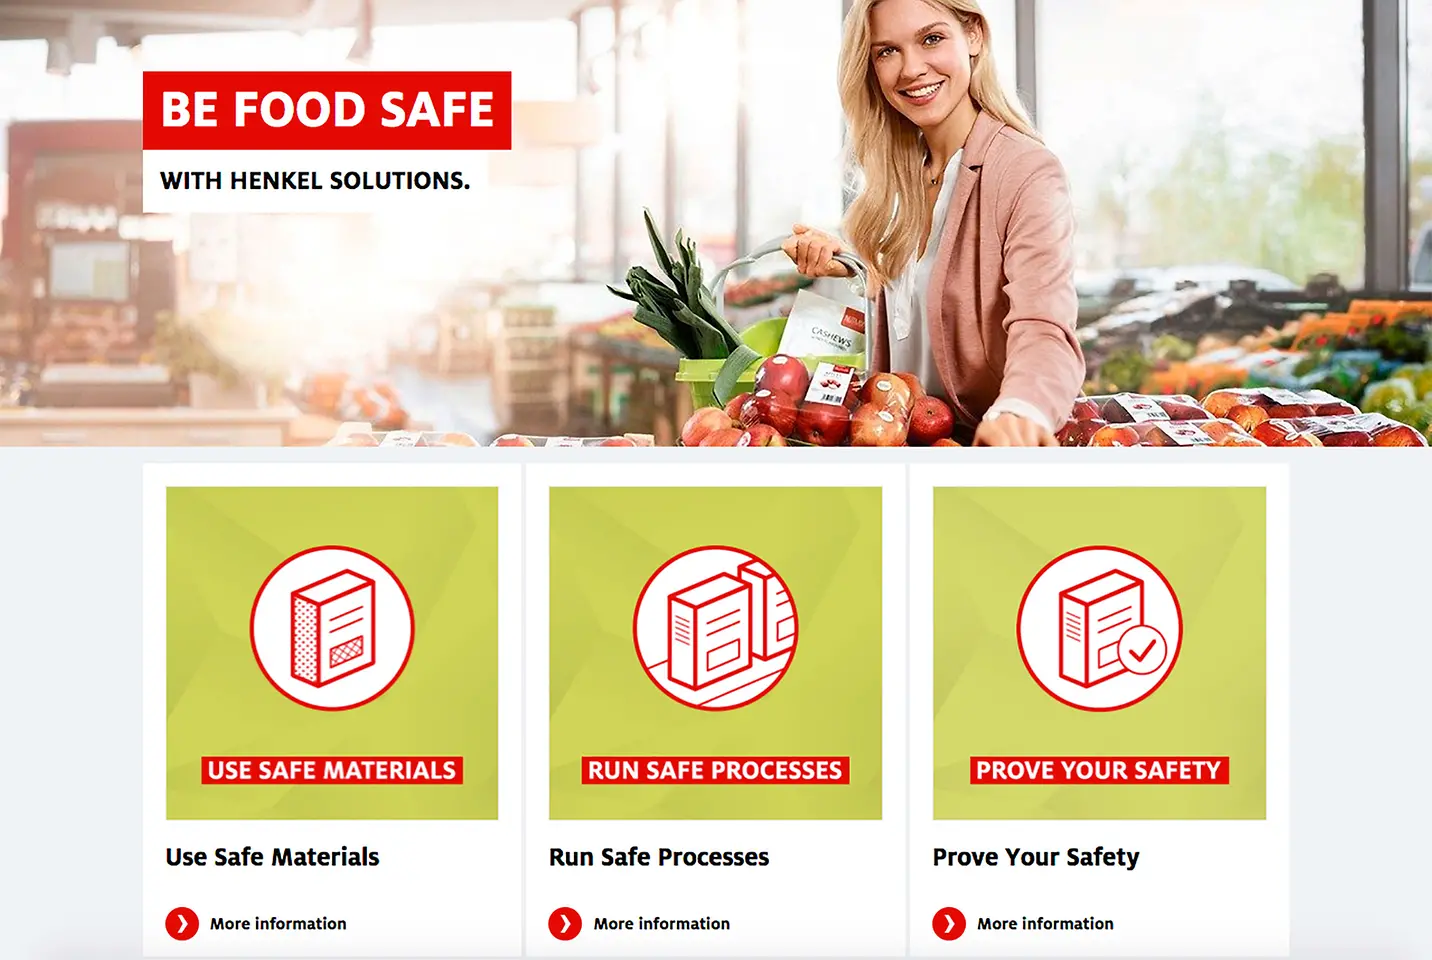 
In seinem Portal zur Lebensmittelsicherheit bietet Henkel Informationen rund um das Thema „Lebensmittelsichere Verpackungen“: henkel.com/foodsafety